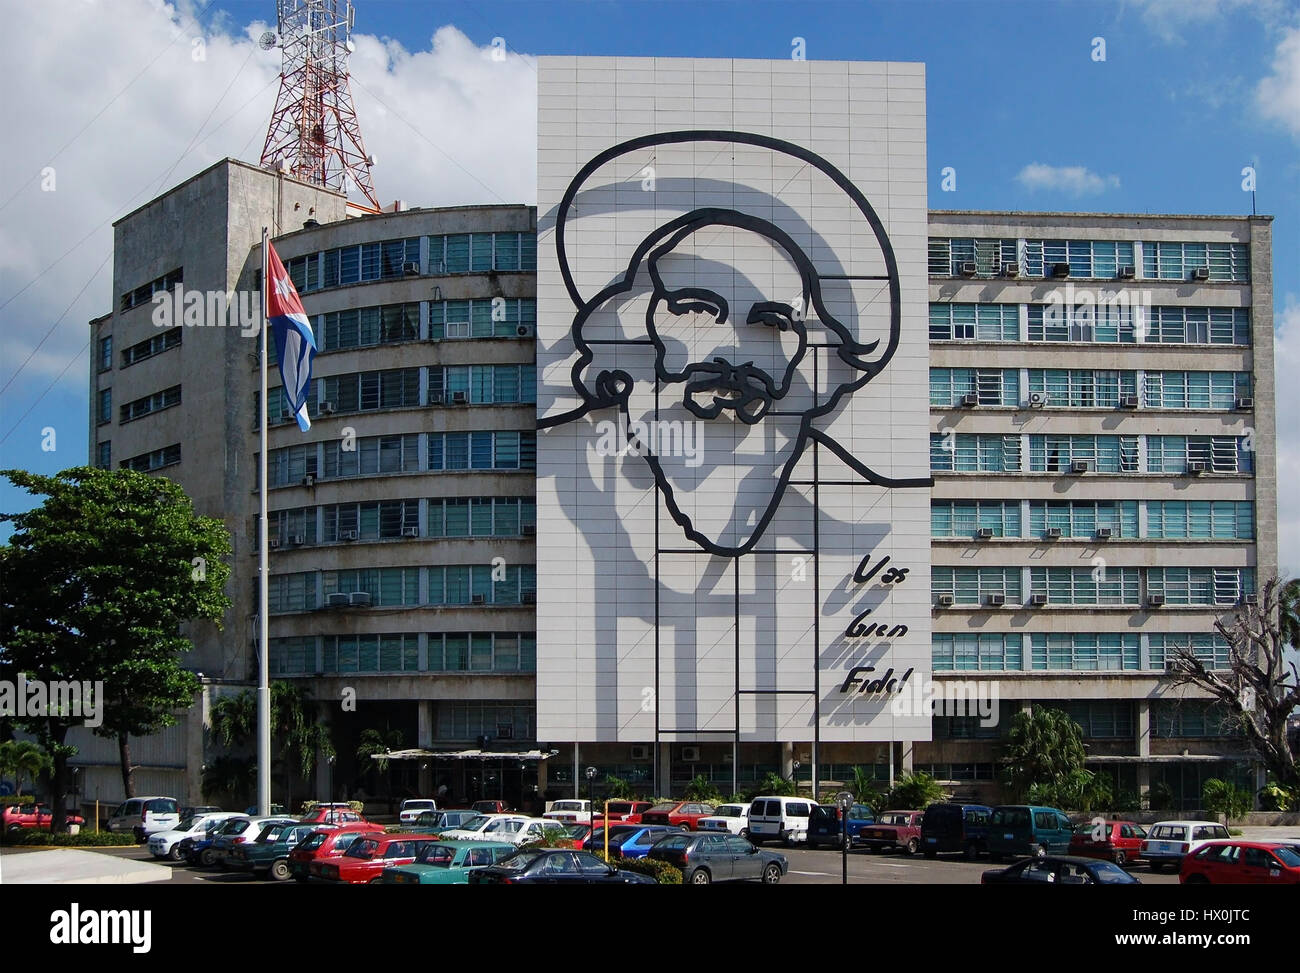 El Ministerio de Comunicaciones, adornada con monumentales retrato de alambre de acero, Plaza de la Revolución, Vedado, Ciudad de La Habana, Cuba Foto de stock